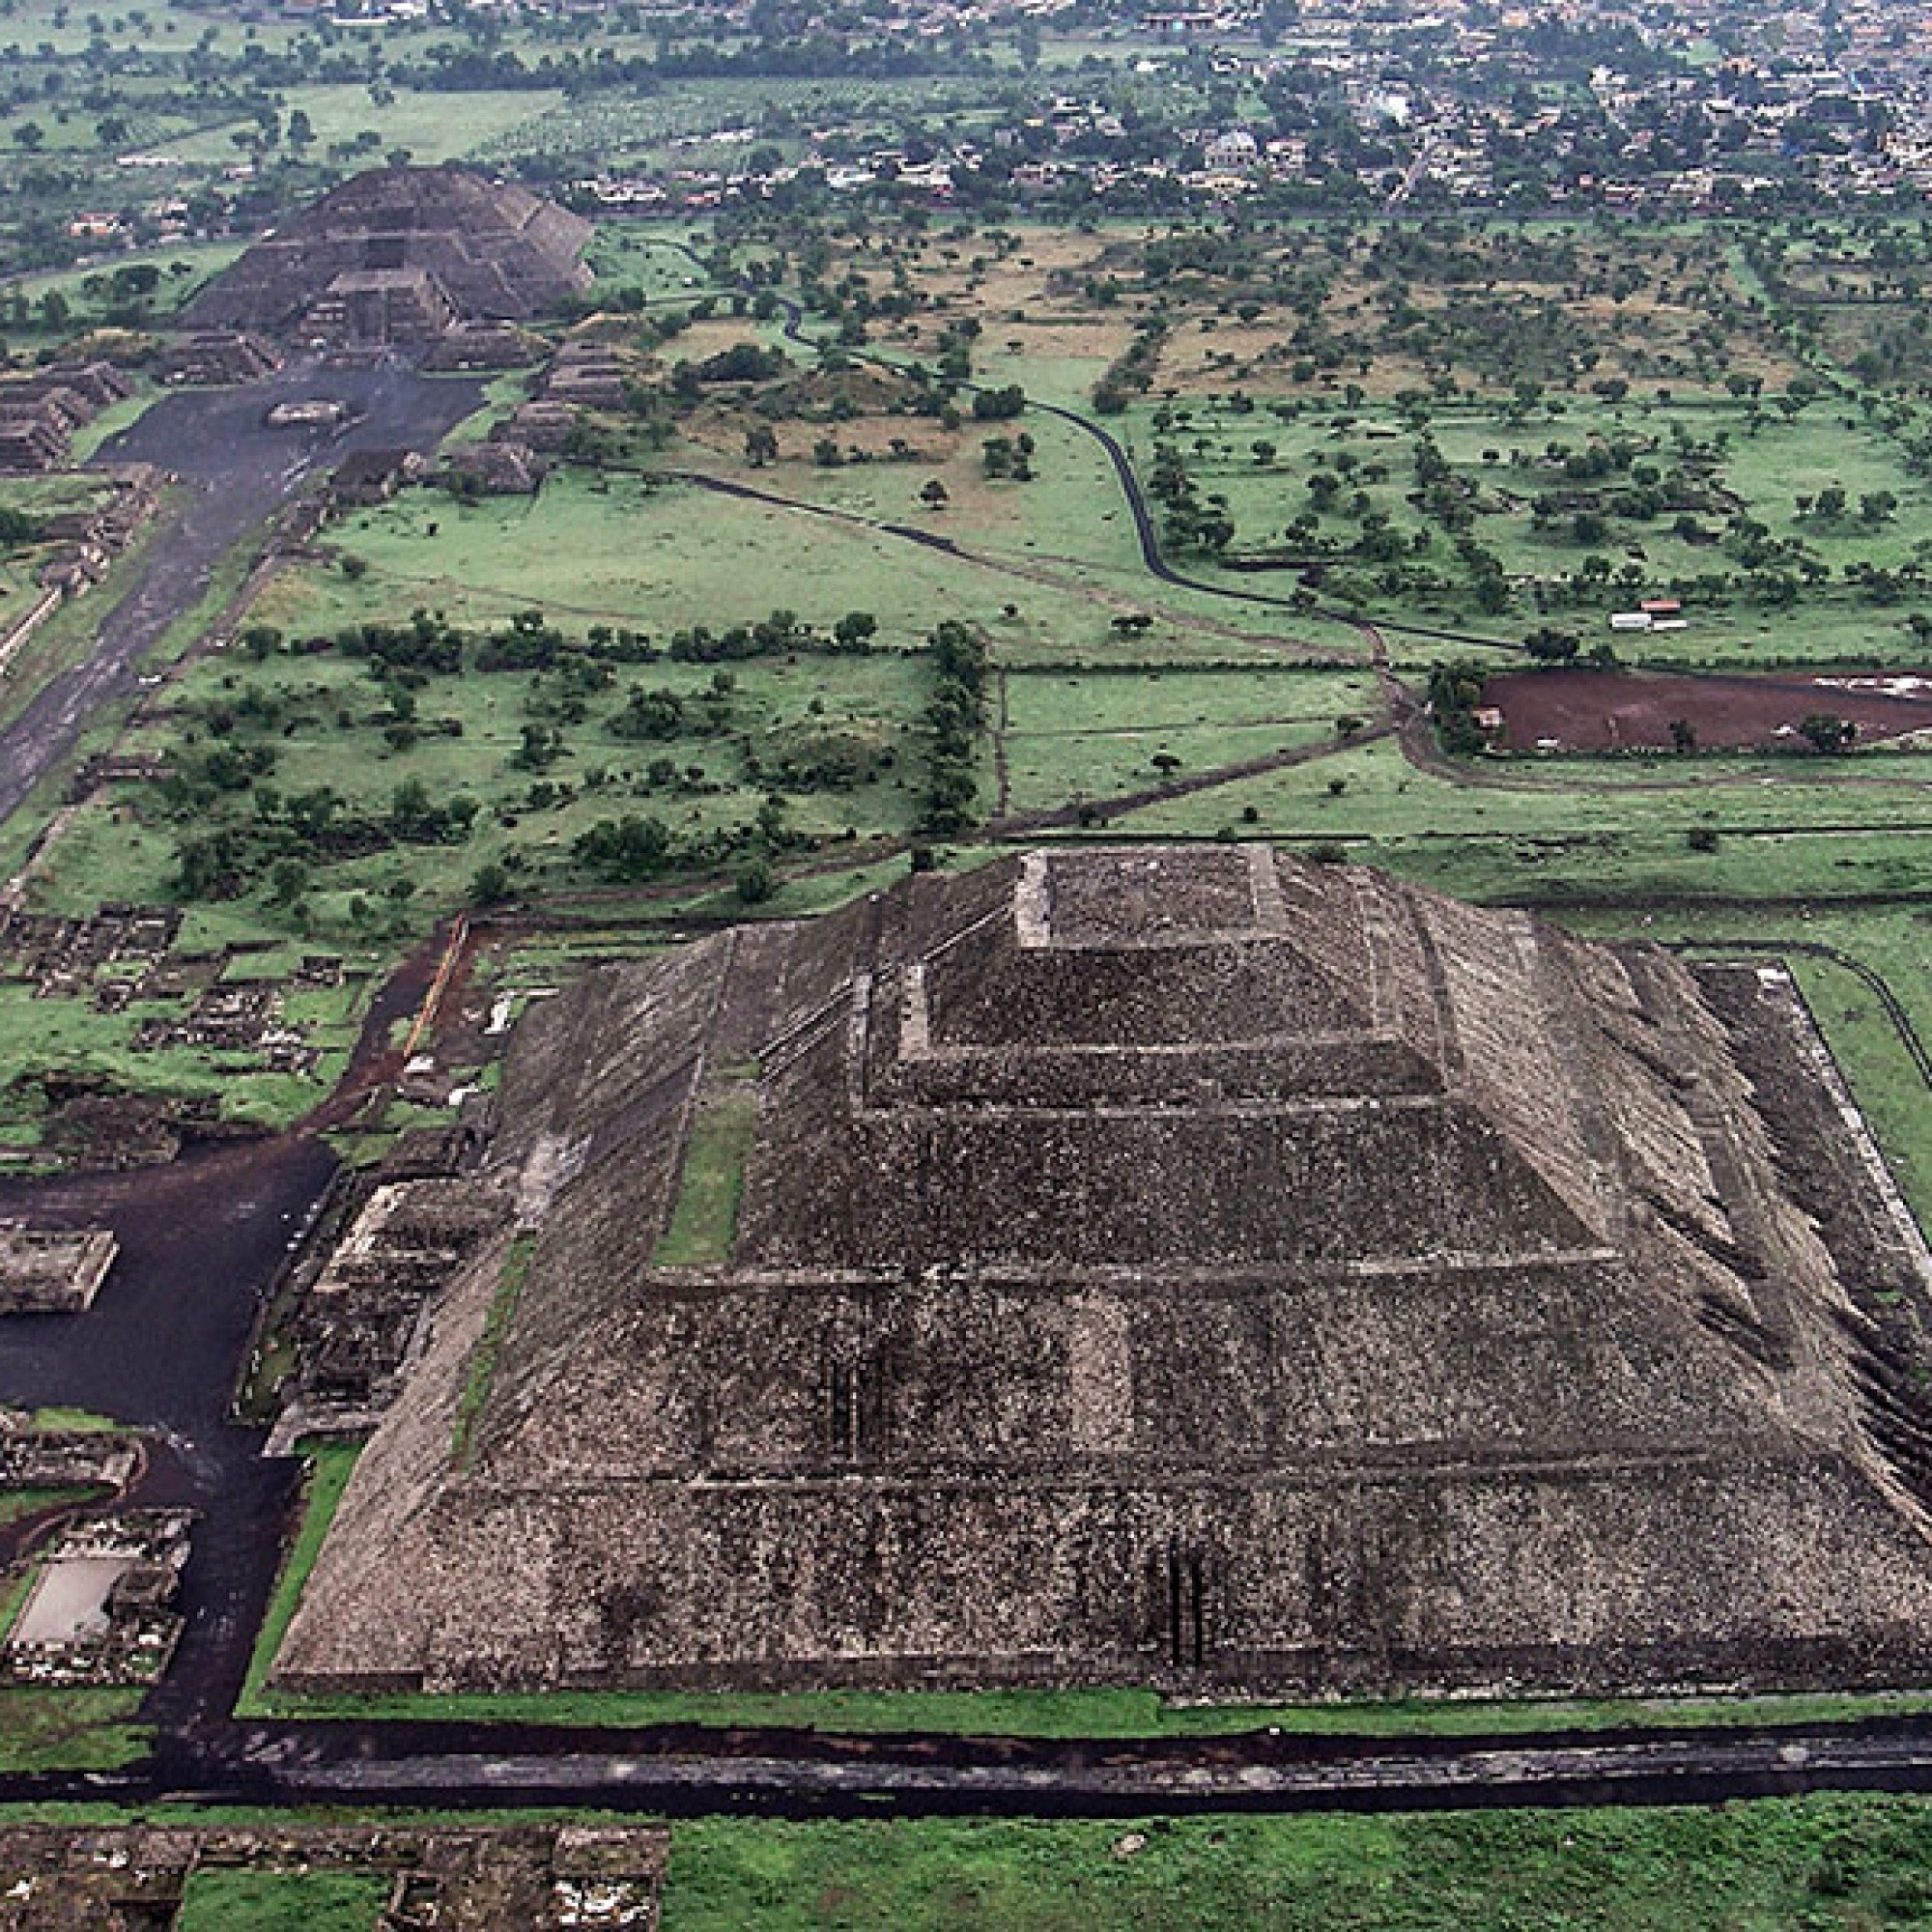 Die Stadt Teotihuacán war ihrer Zeit voraus. Auch heute noch faszinieren ihre Überreste.  (JOMA-MAC, CC BY-SA 3.0, Wikimedia)